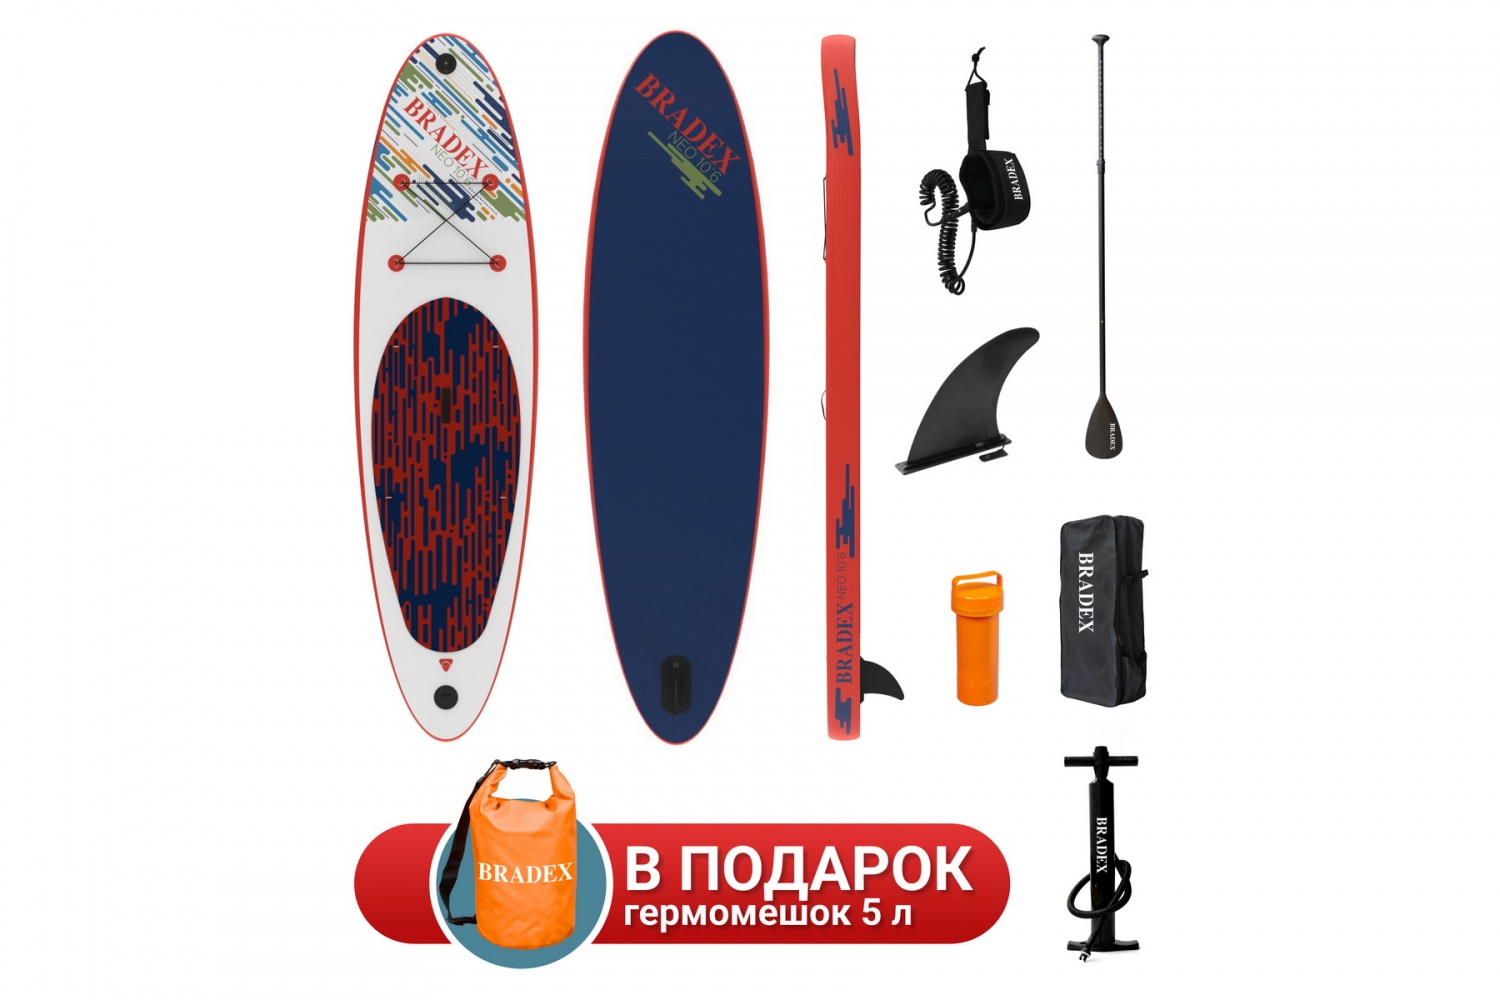 Sup board (надувная доска для серфинга с веслом) Bradex Сапборд Neo 10’6, прогулочный фото